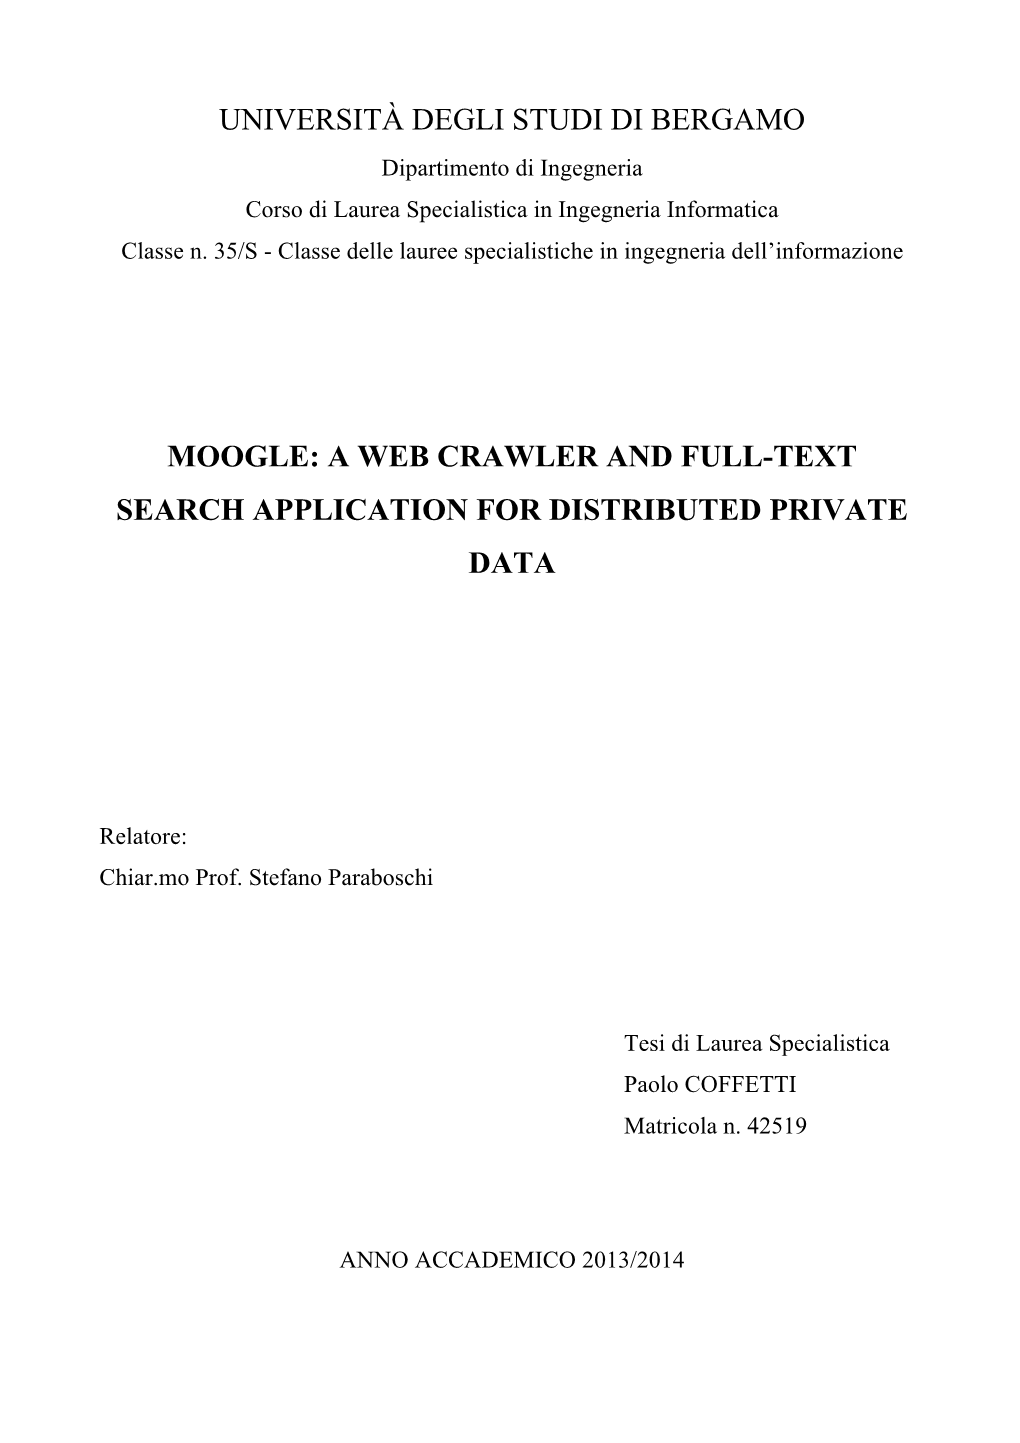 Università Degli Studi Di Bergamo Moogle: a Web Crawler and Full-Text Search Application for Distributed Private Data